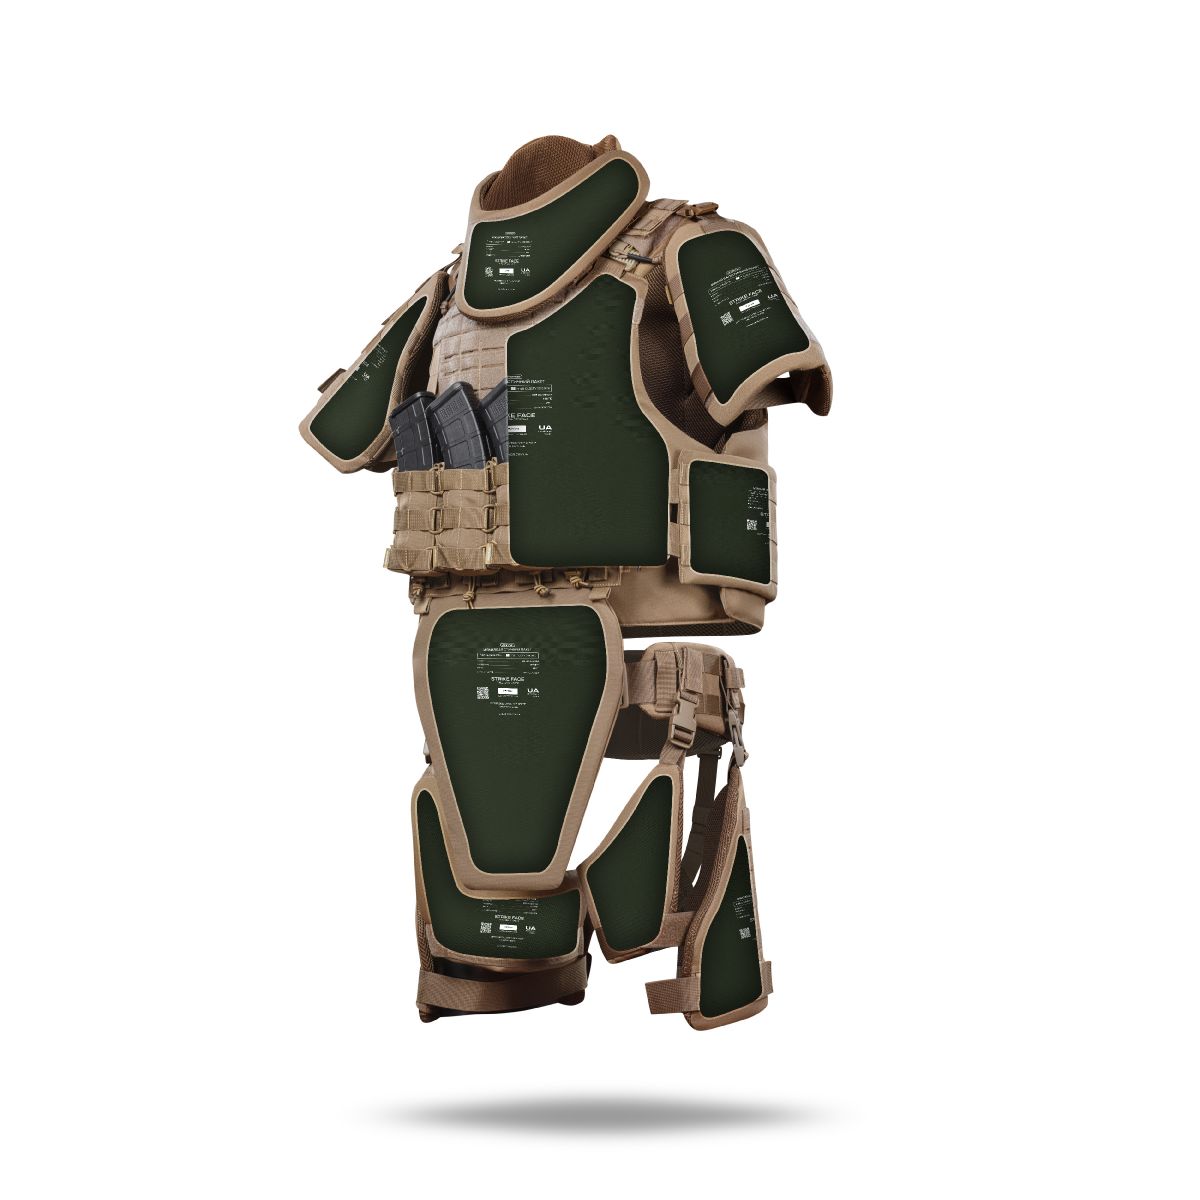 Бронекостюм A.T.A.S. (Advanced Tactical Armor Suit) Level I. Класс защиты – 1. Койот. S/M 2